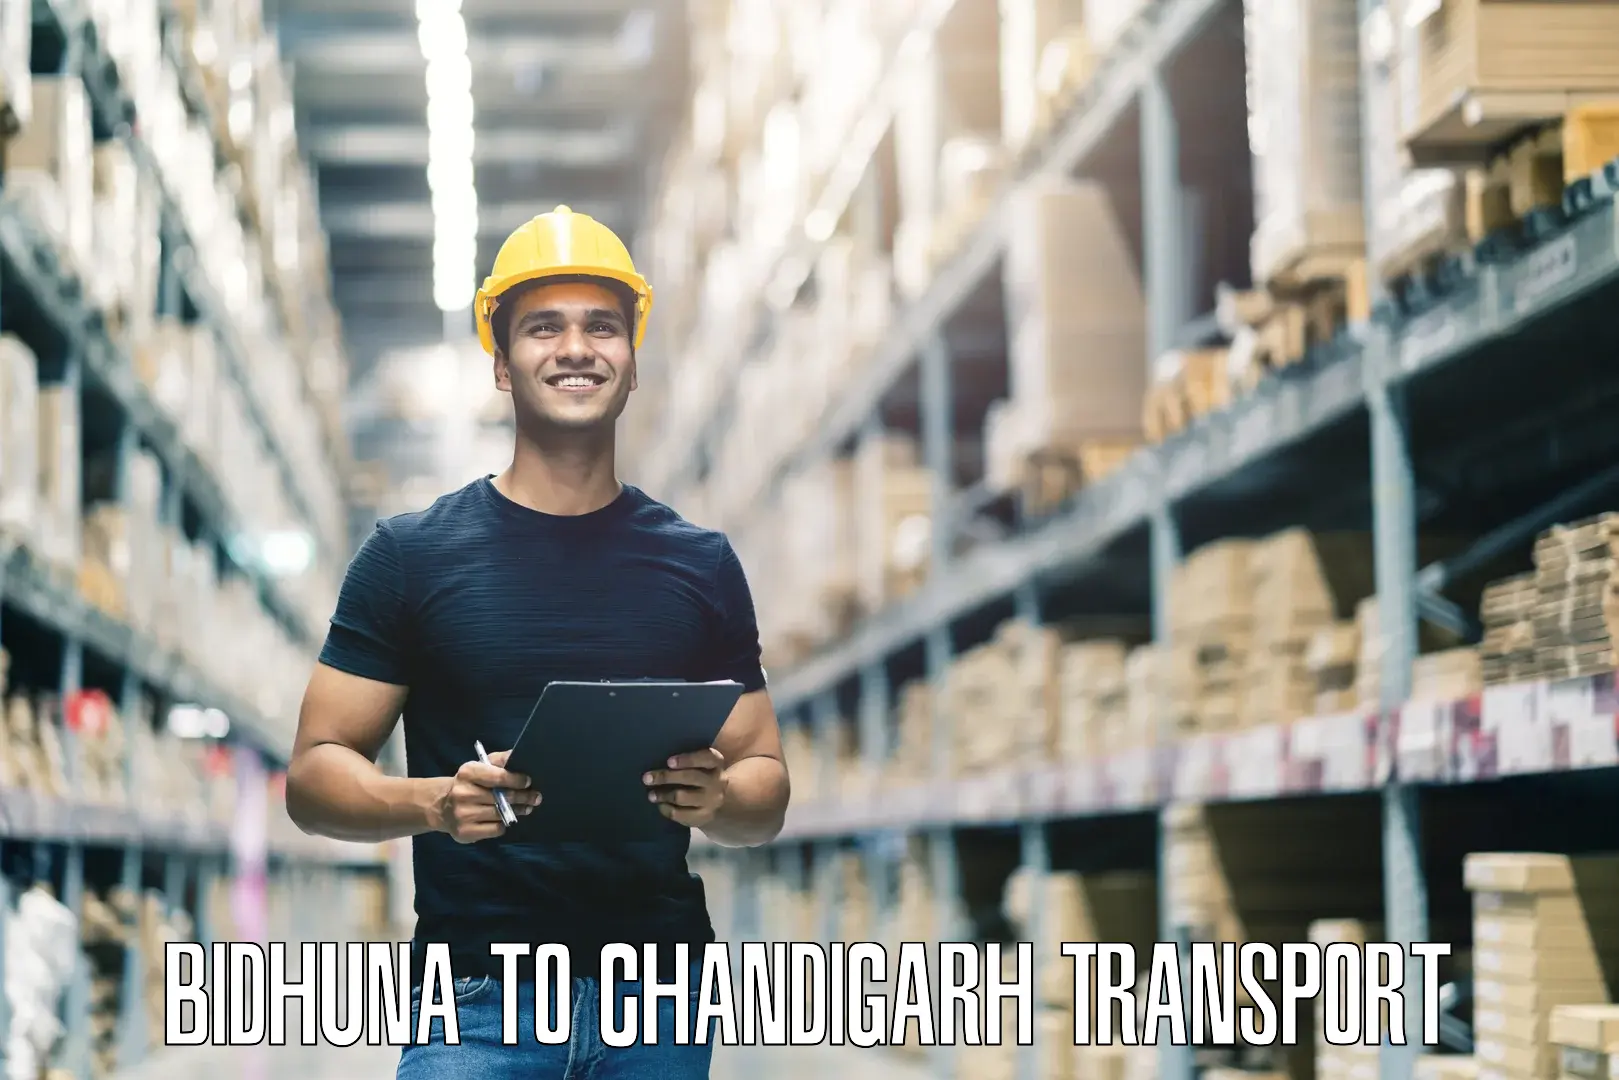 Online transport service Bidhuna to Chandigarh